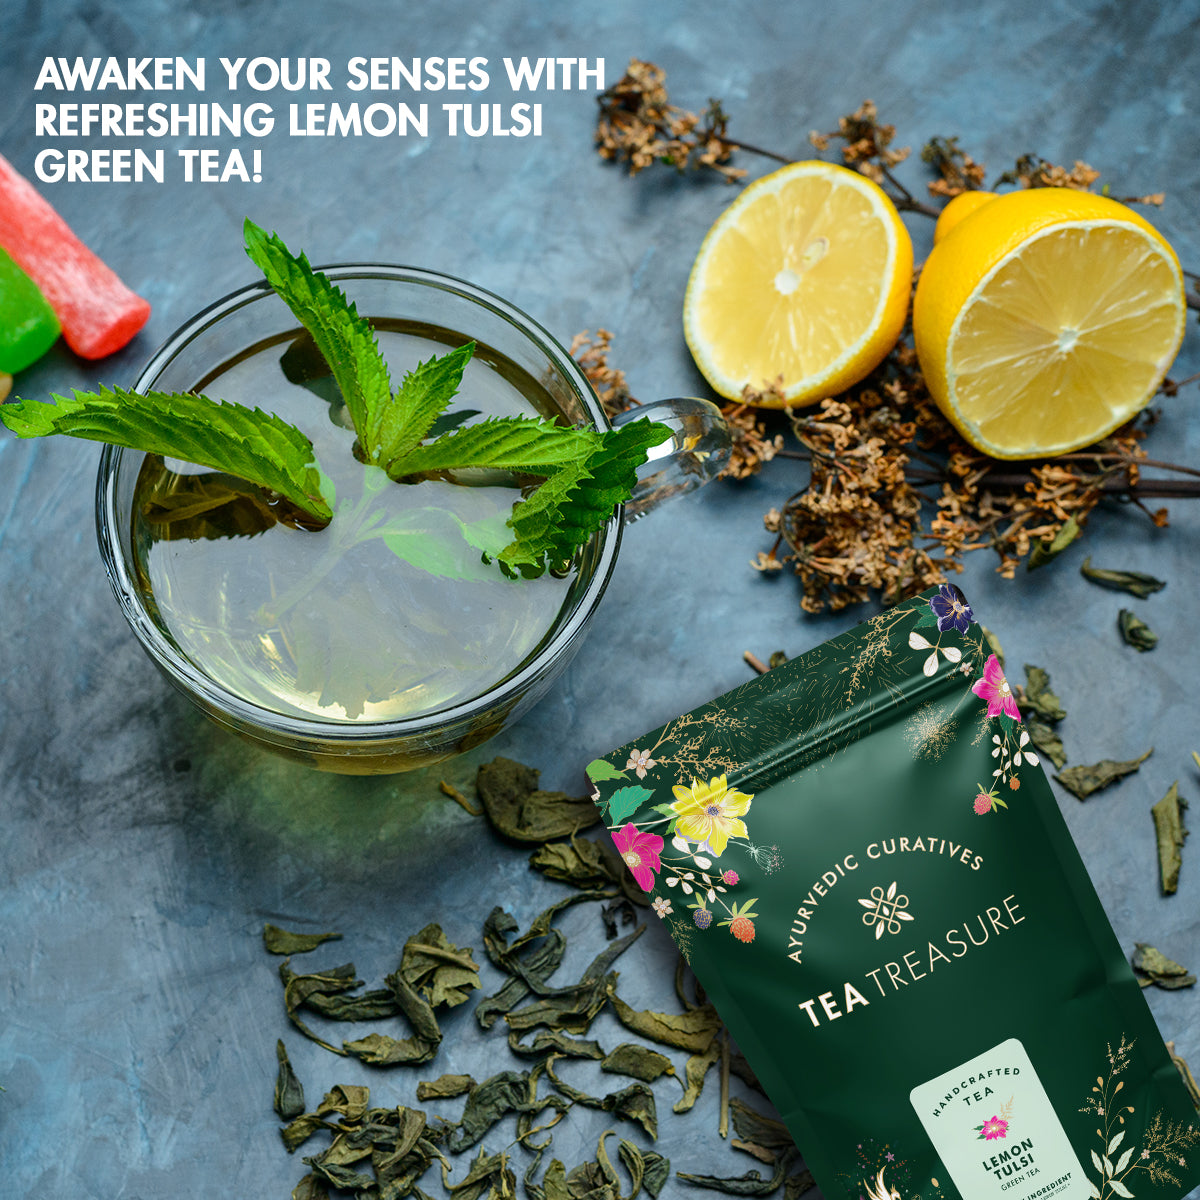 Lemon tulsi Green Tea - Sorich